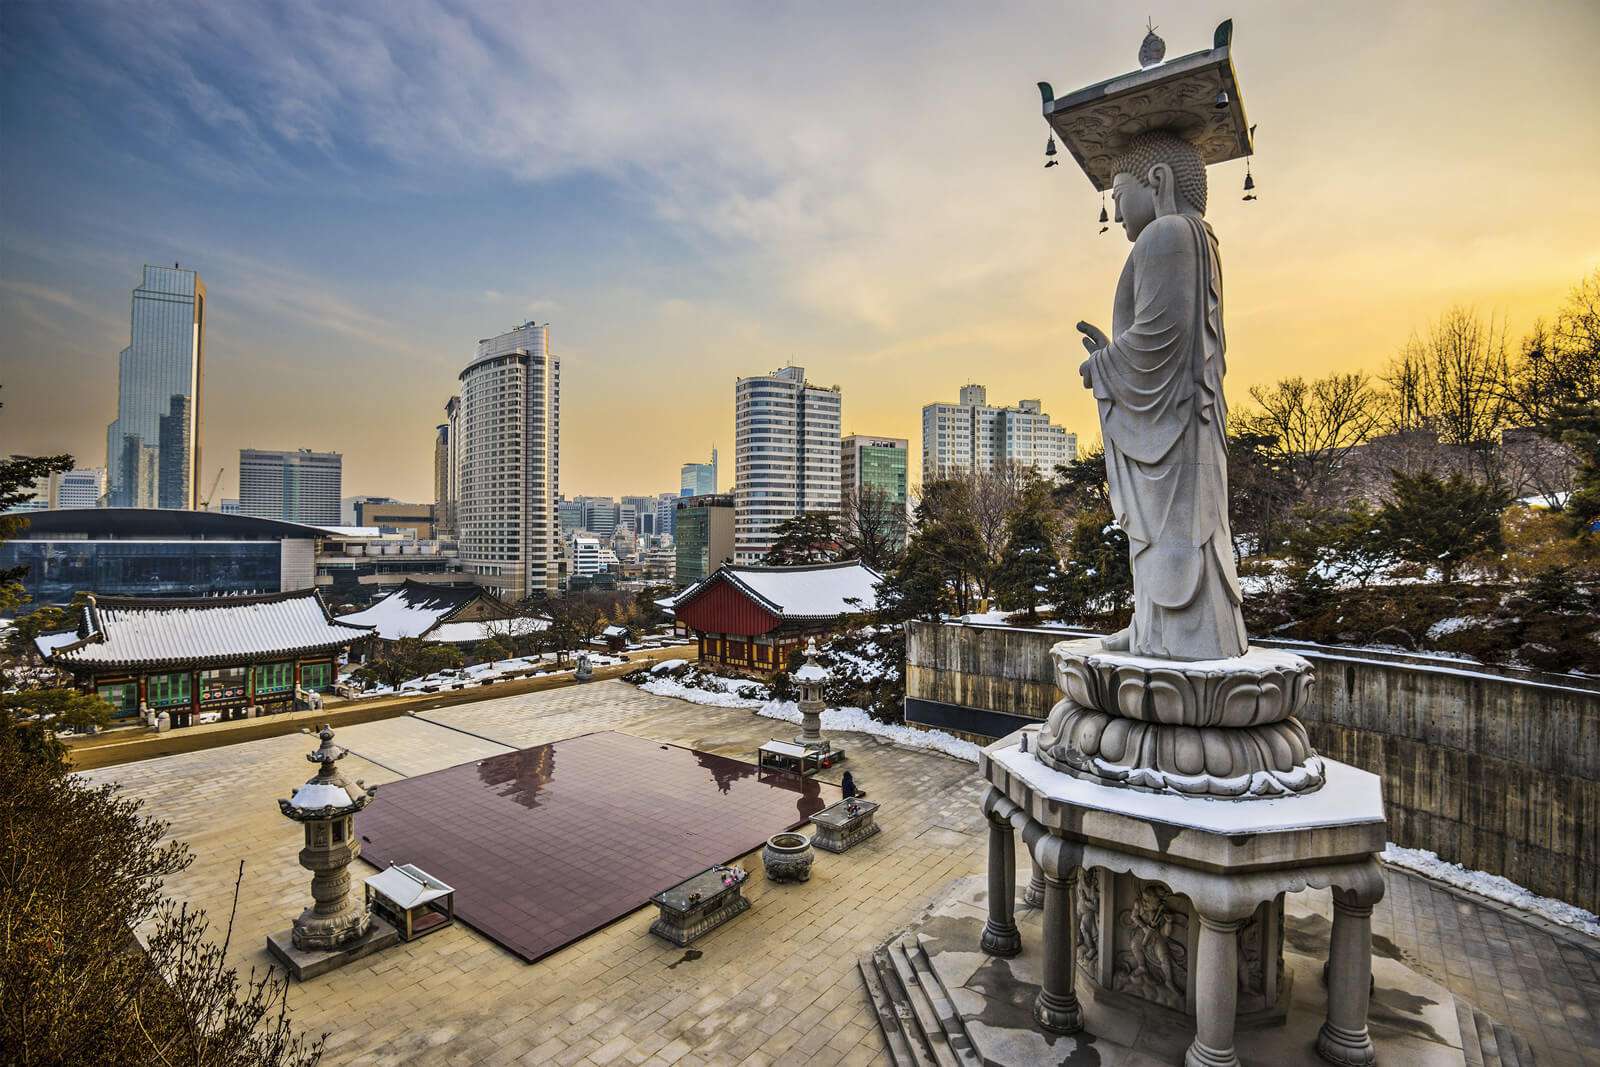 Insadong đẹp và yên bình, nơi đây phản ánh rõ nét một Seoul truyền thống